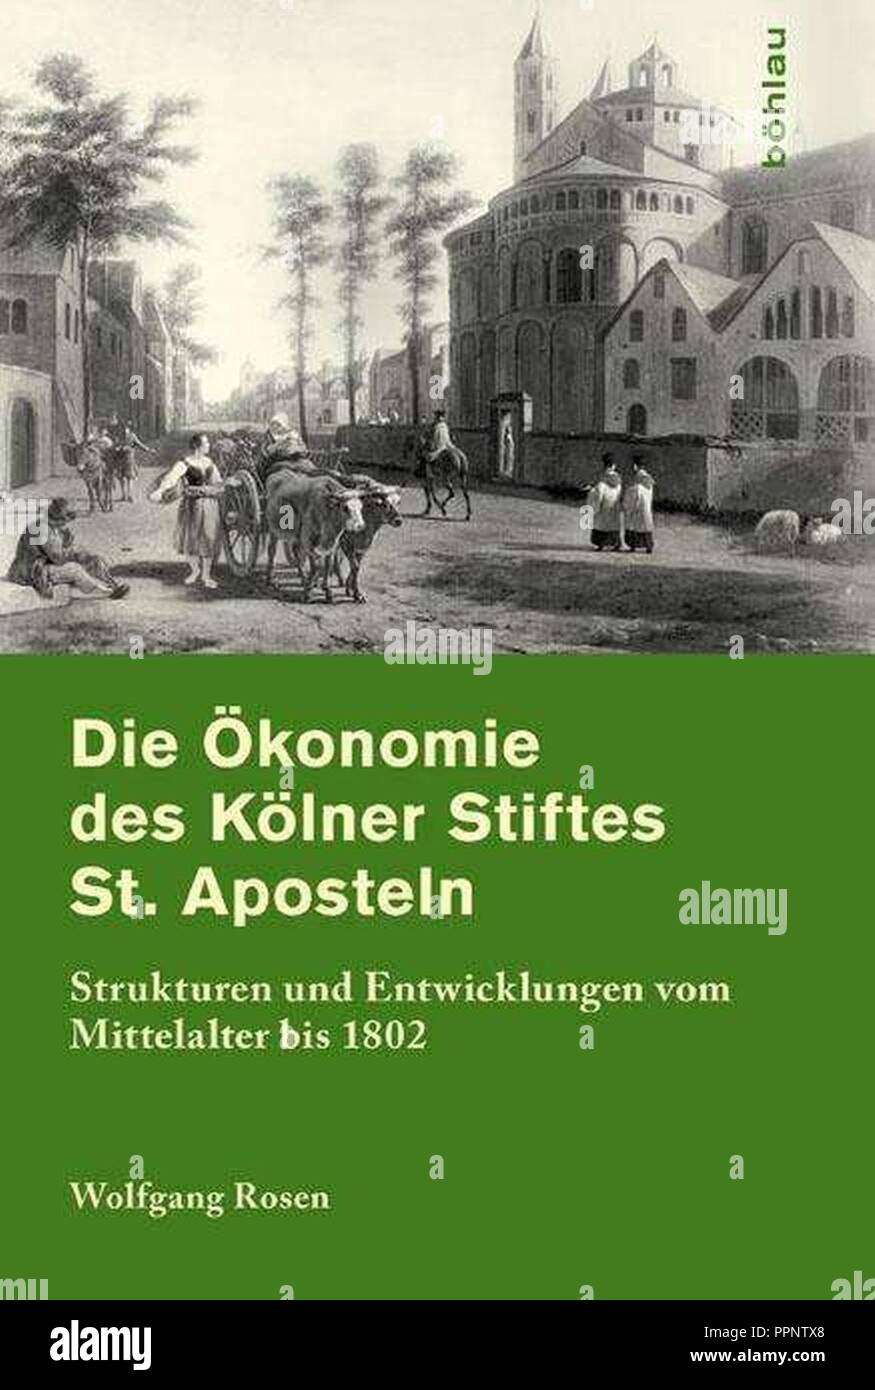 Book Cover after Gerrit Berckheyde - Die Ökonomie des Kölner Stiftes St. Aposteln. Stock Photo